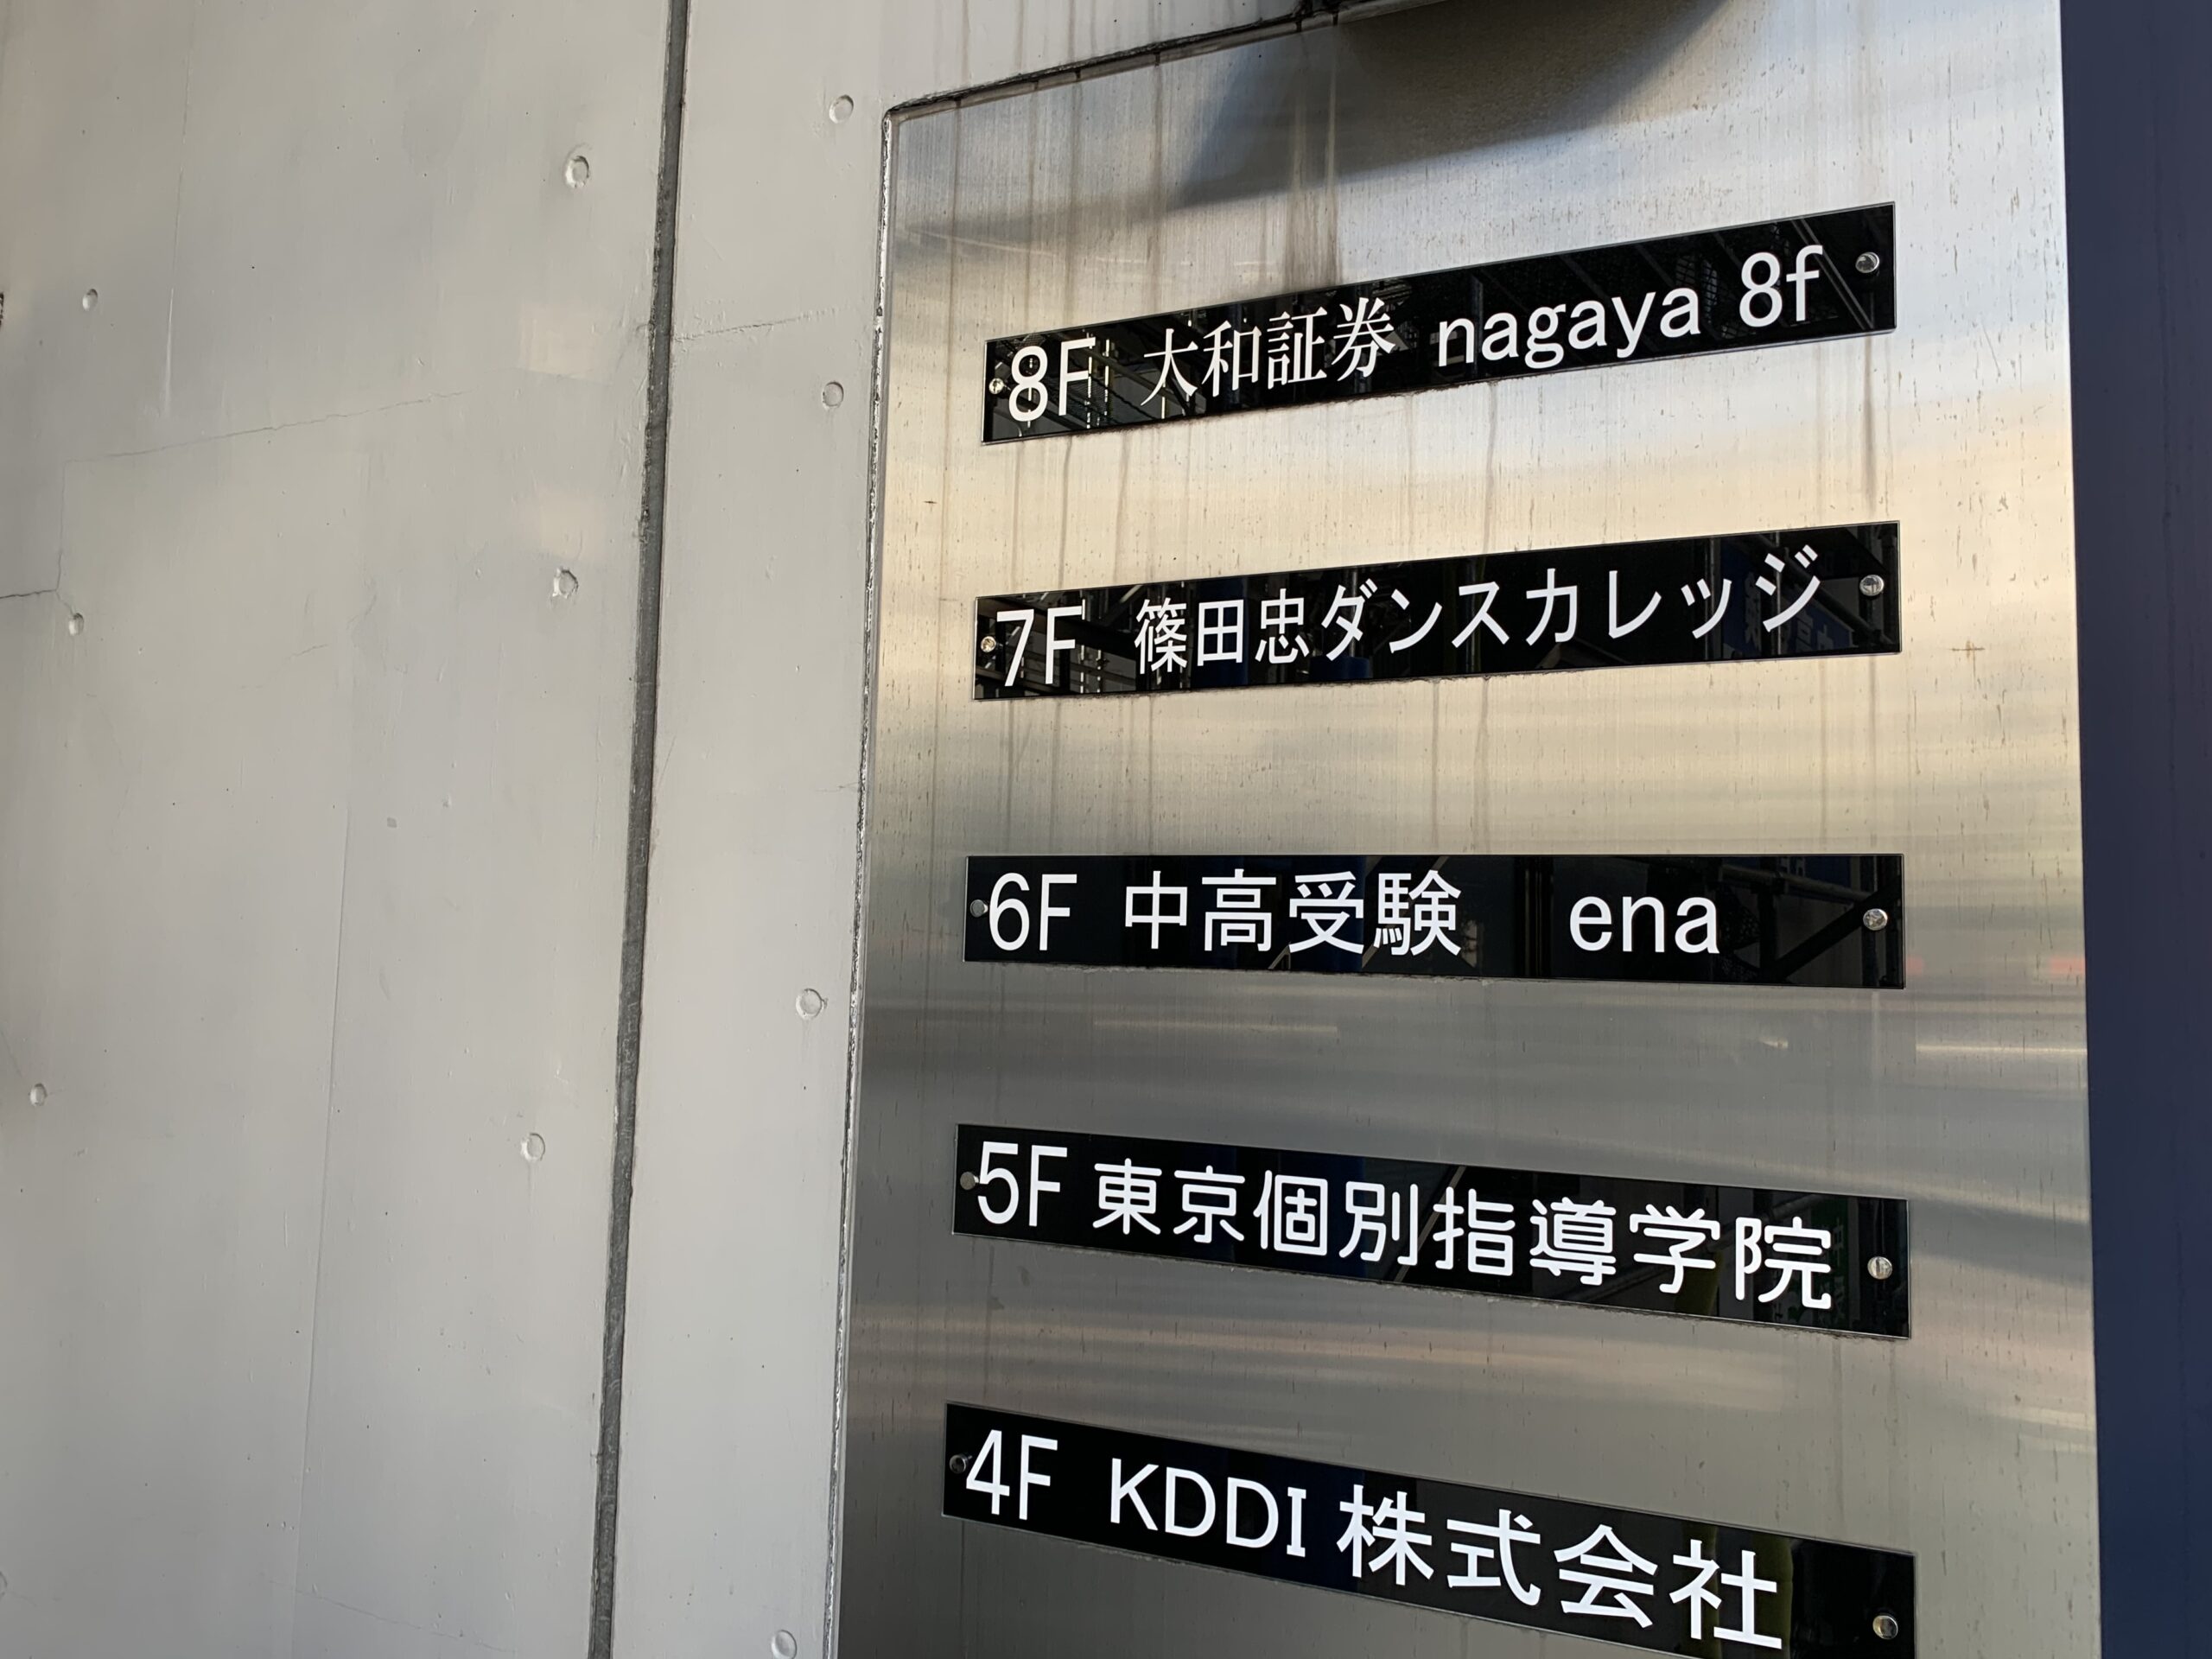 武蔵小山駅東口　nagaya 8f　Wi-Fi